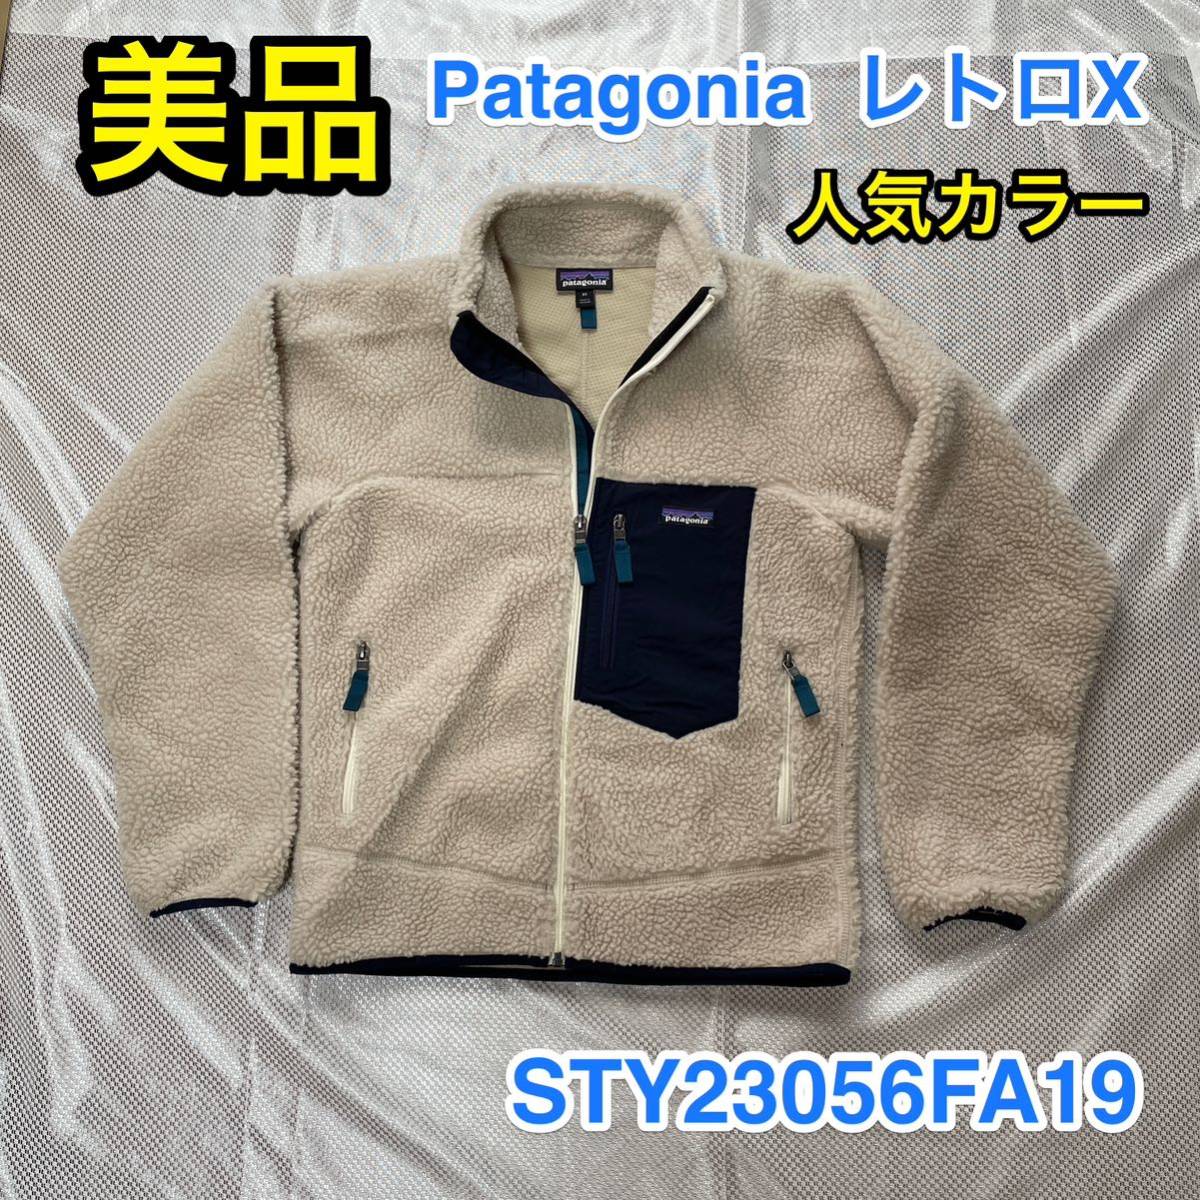 美品・人気カラー】Patagonia レトロX フリースジャケット メンズ XS